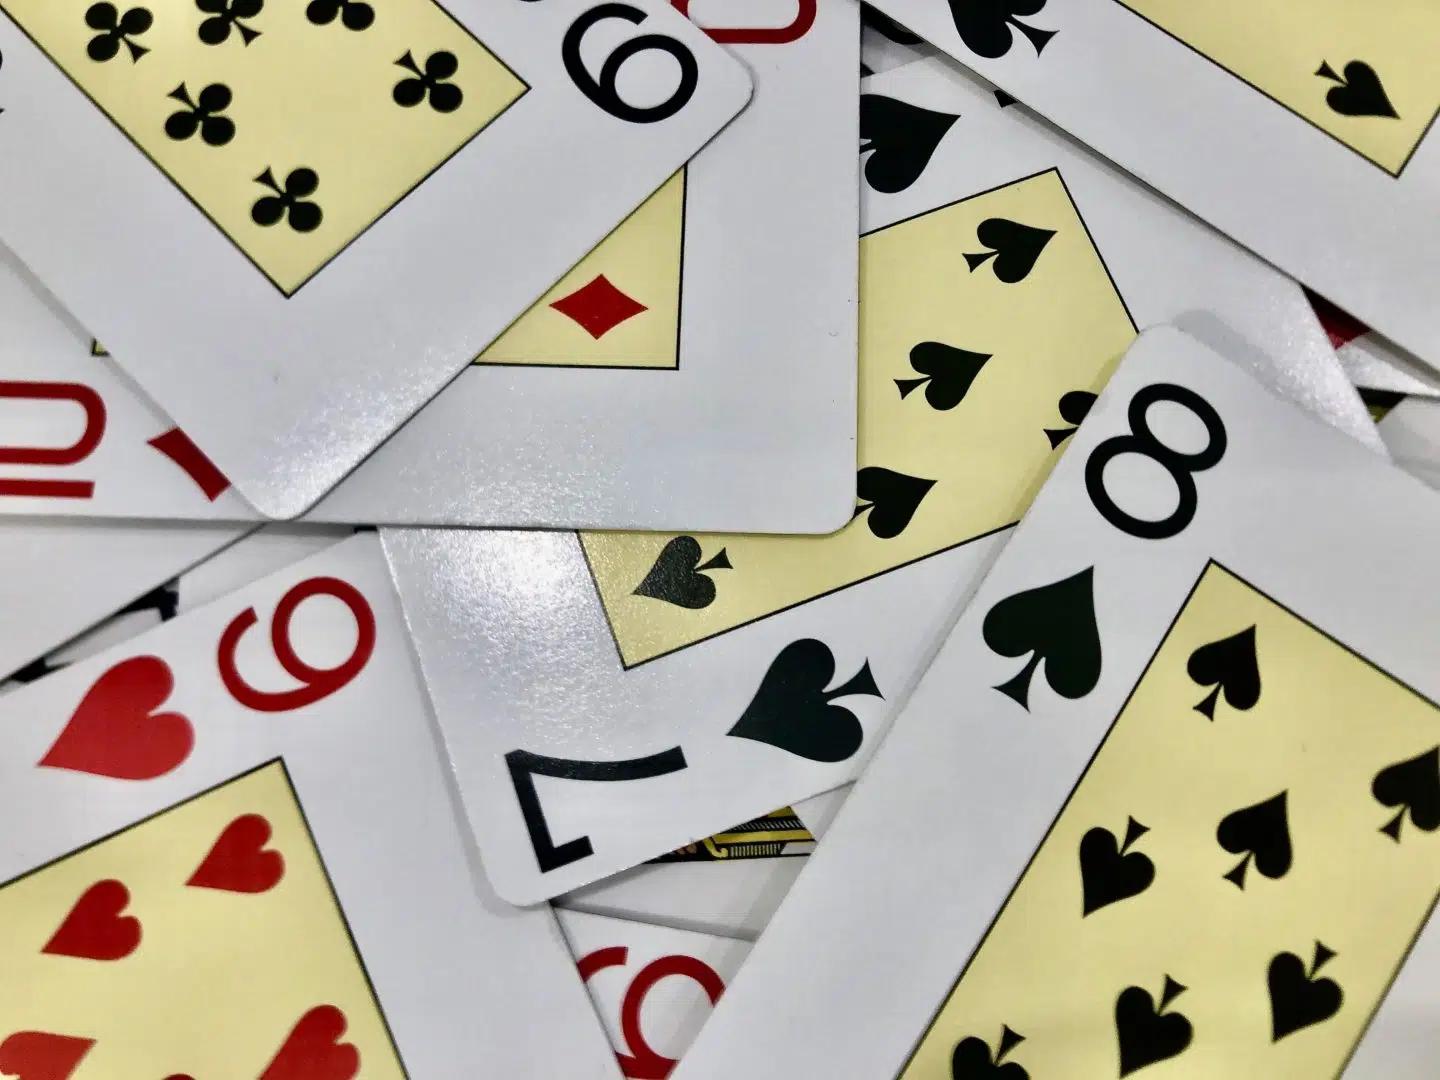 juegos de cartas faciles - Qué puedo jugar con cartas solo